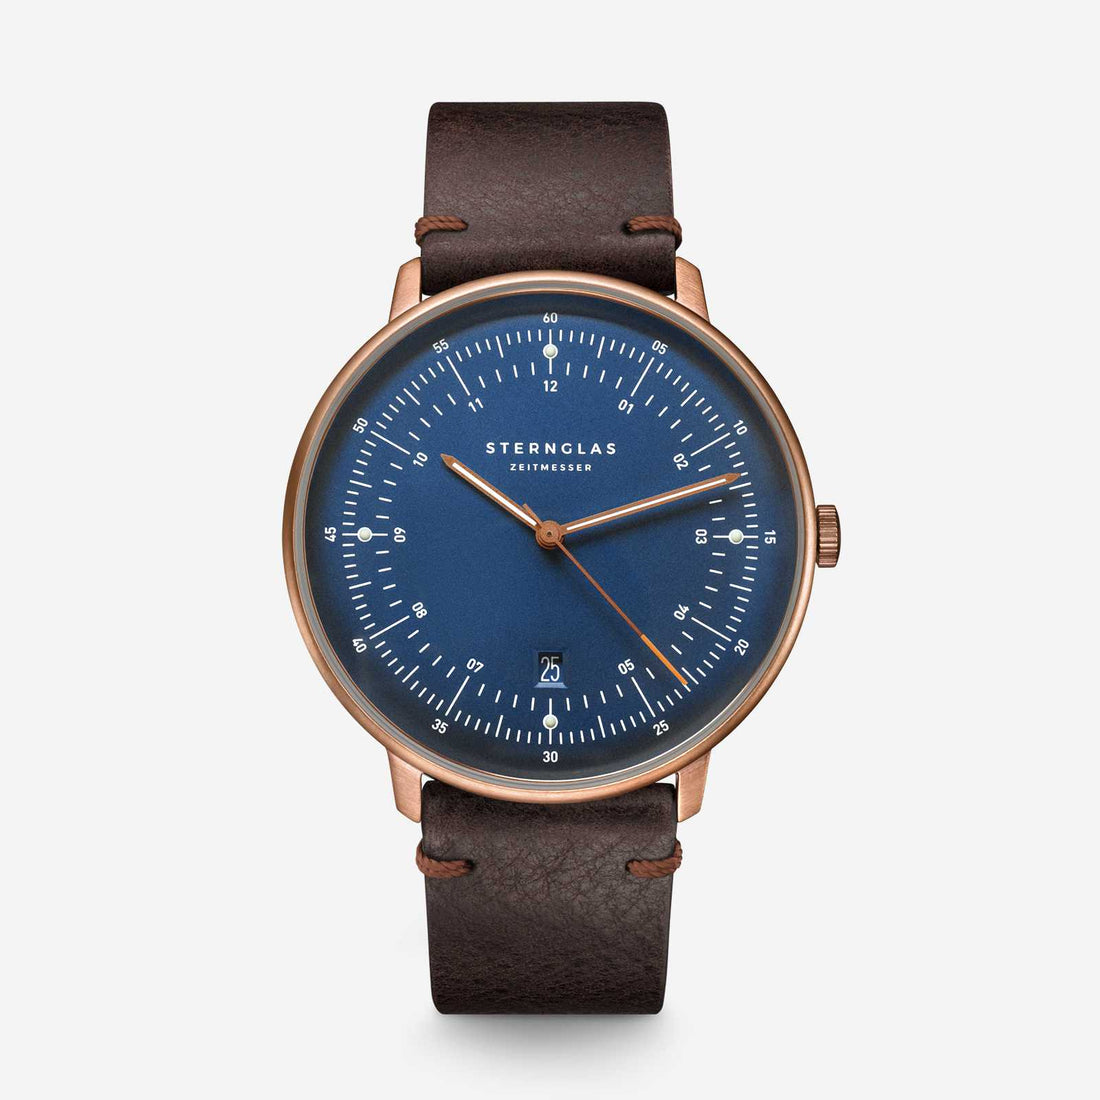 STERNGLAS Bauhaus watches – designed in Hamburg – sternglas.com